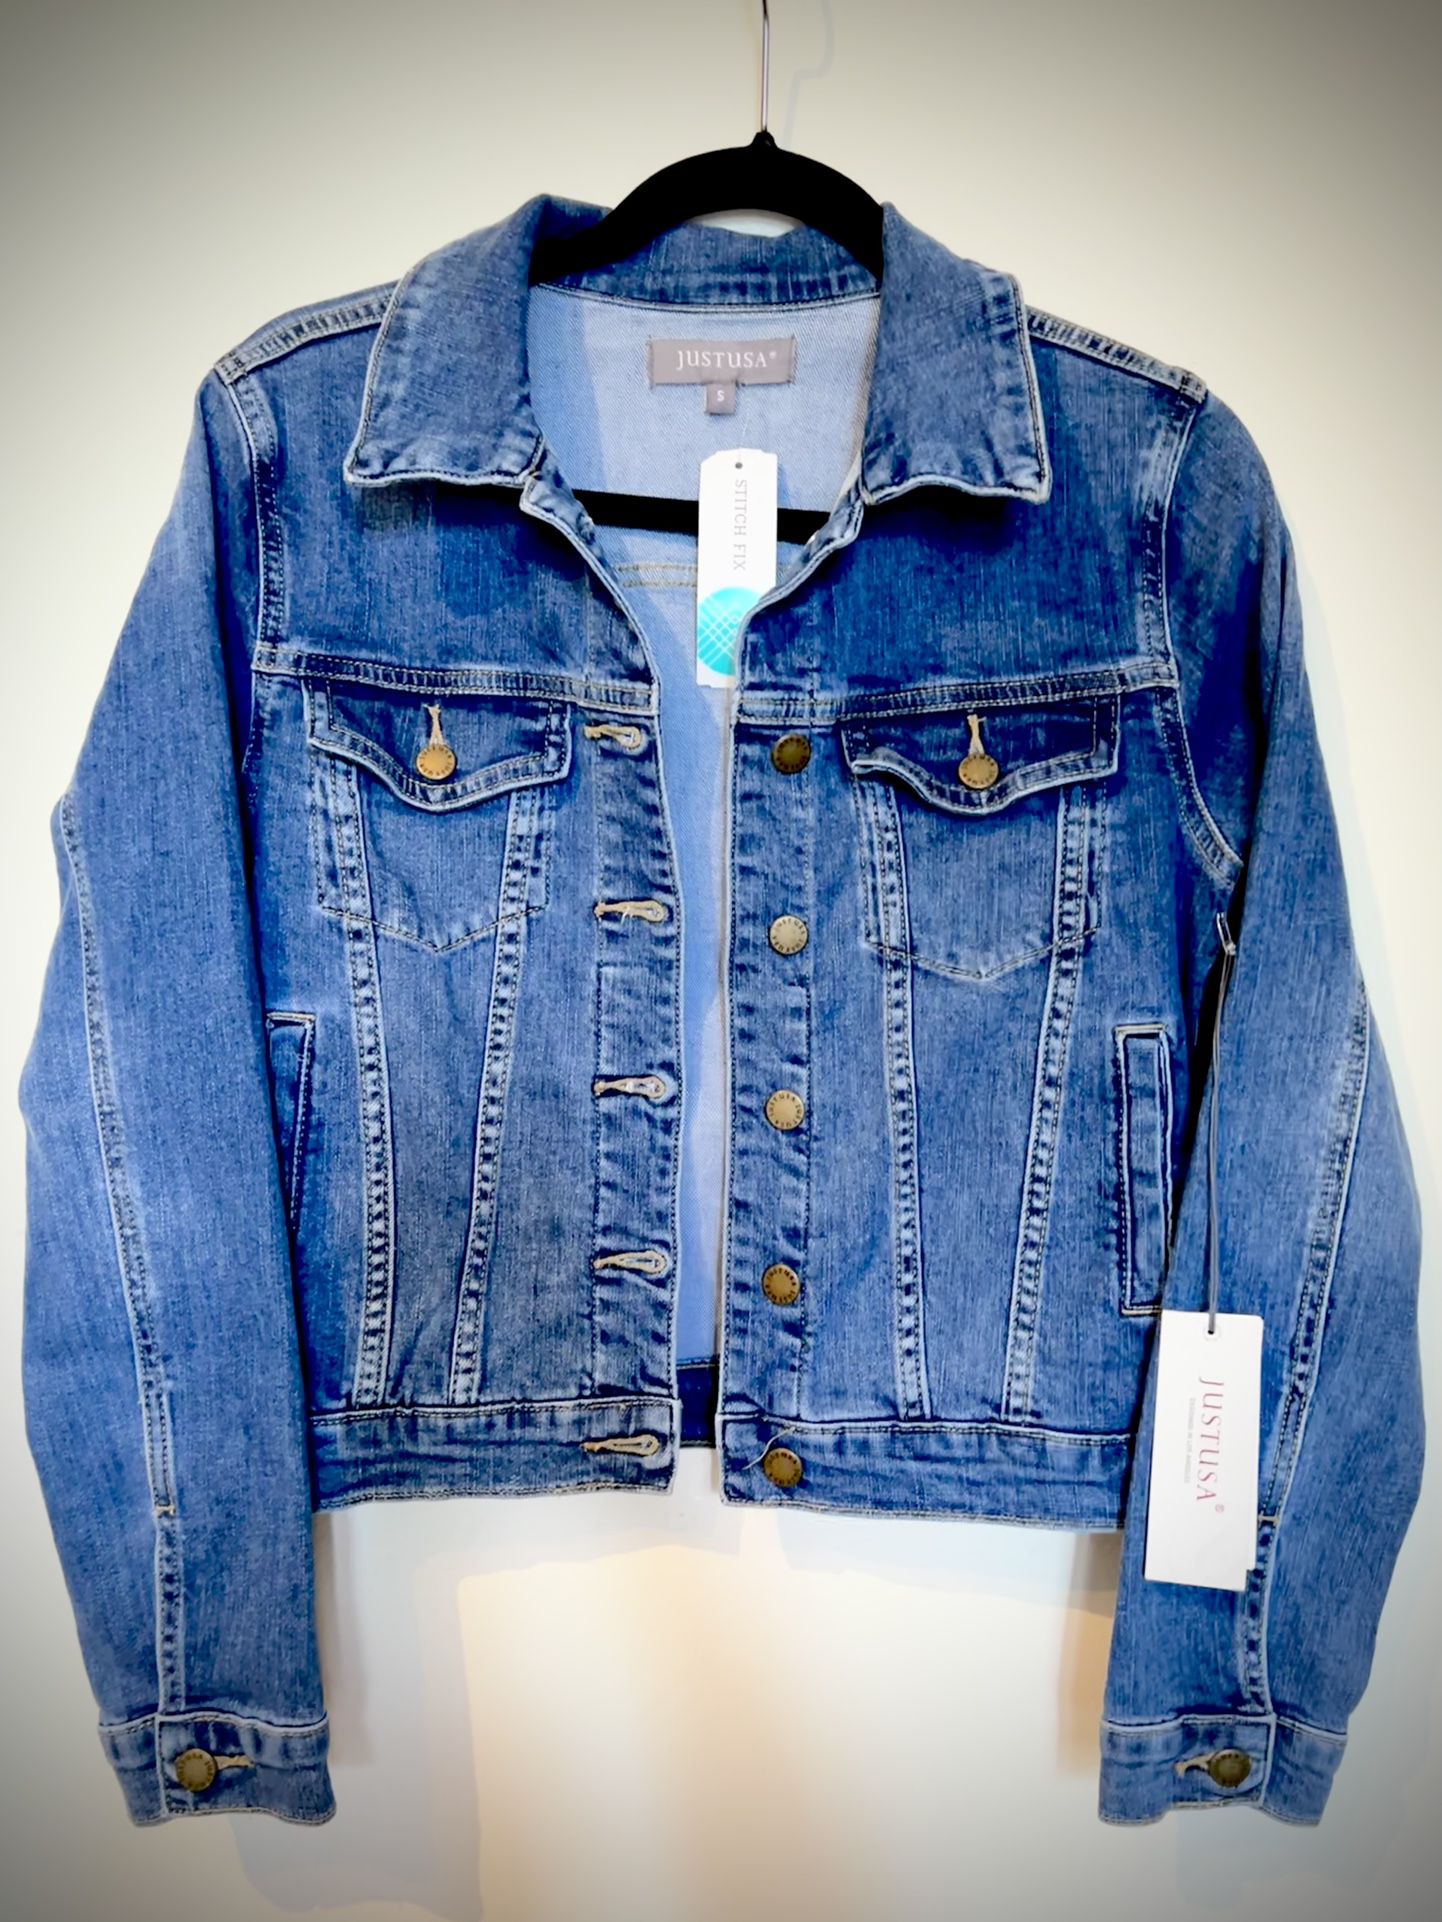 Stitch Fix Just USA Hadid Distressed Denim Jacket, Blue, Size Small